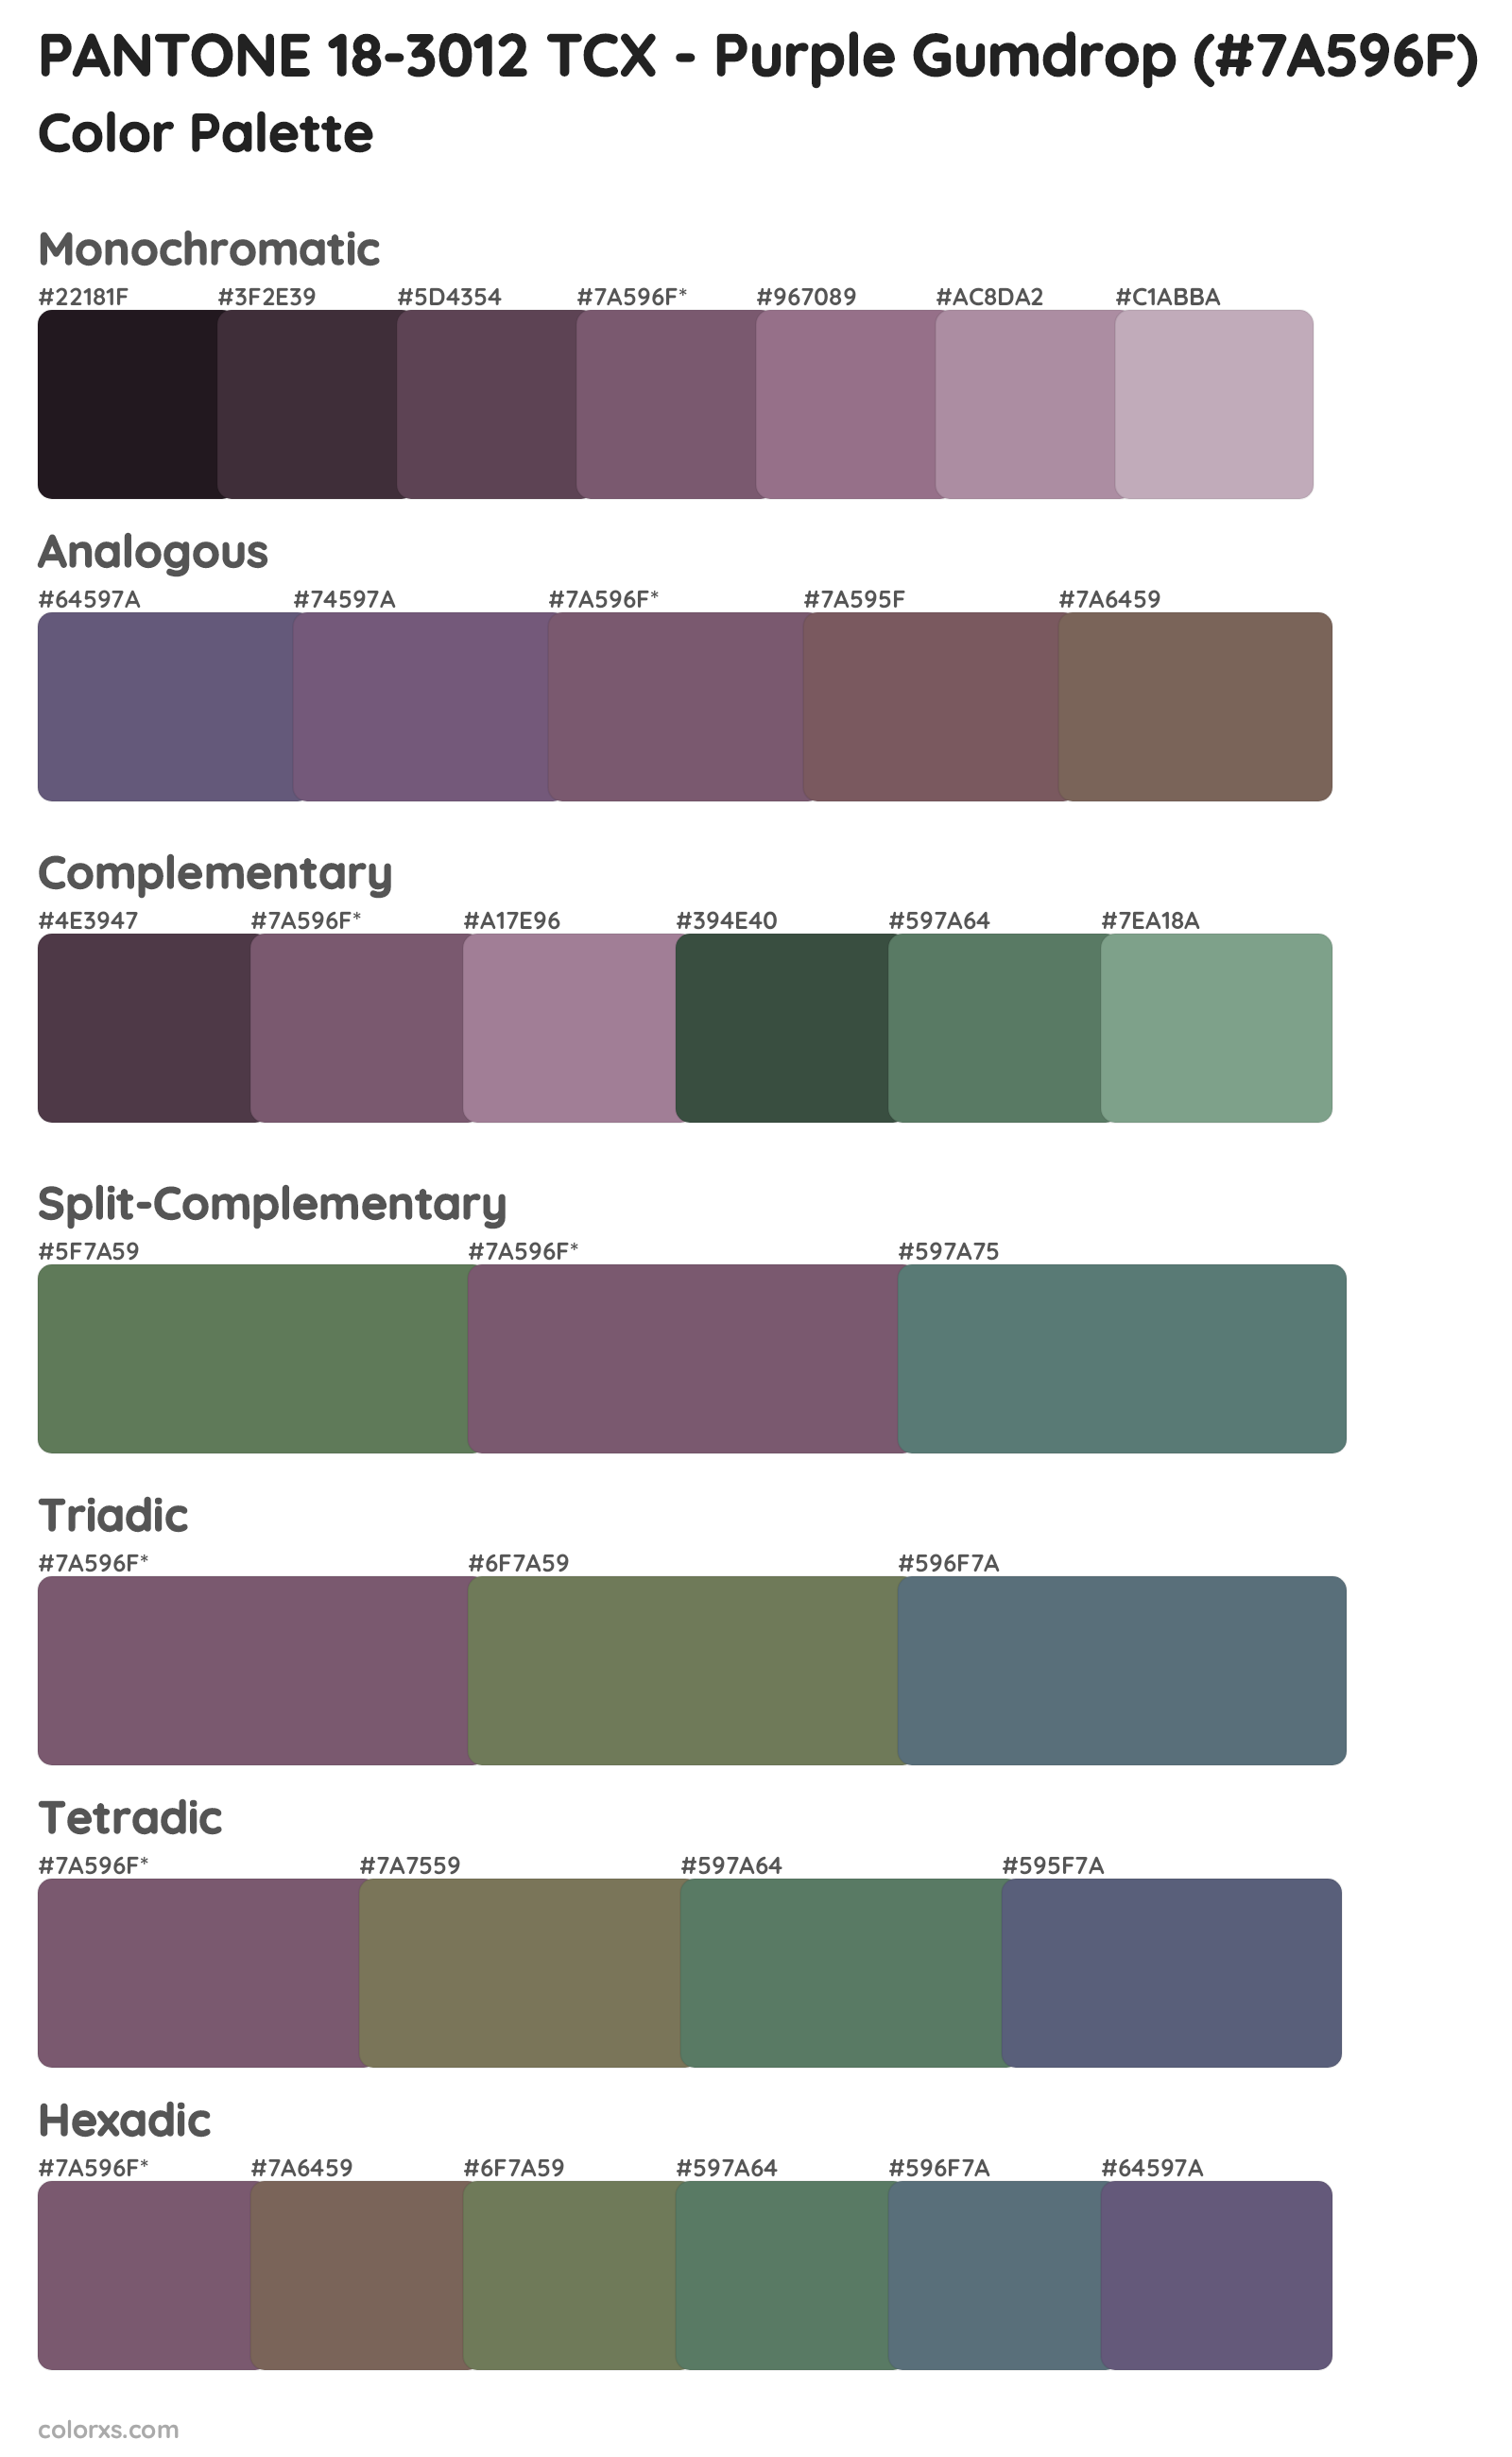 PANTONE 18-3012 TCX - Purple Gumdrop Color Scheme Palettes